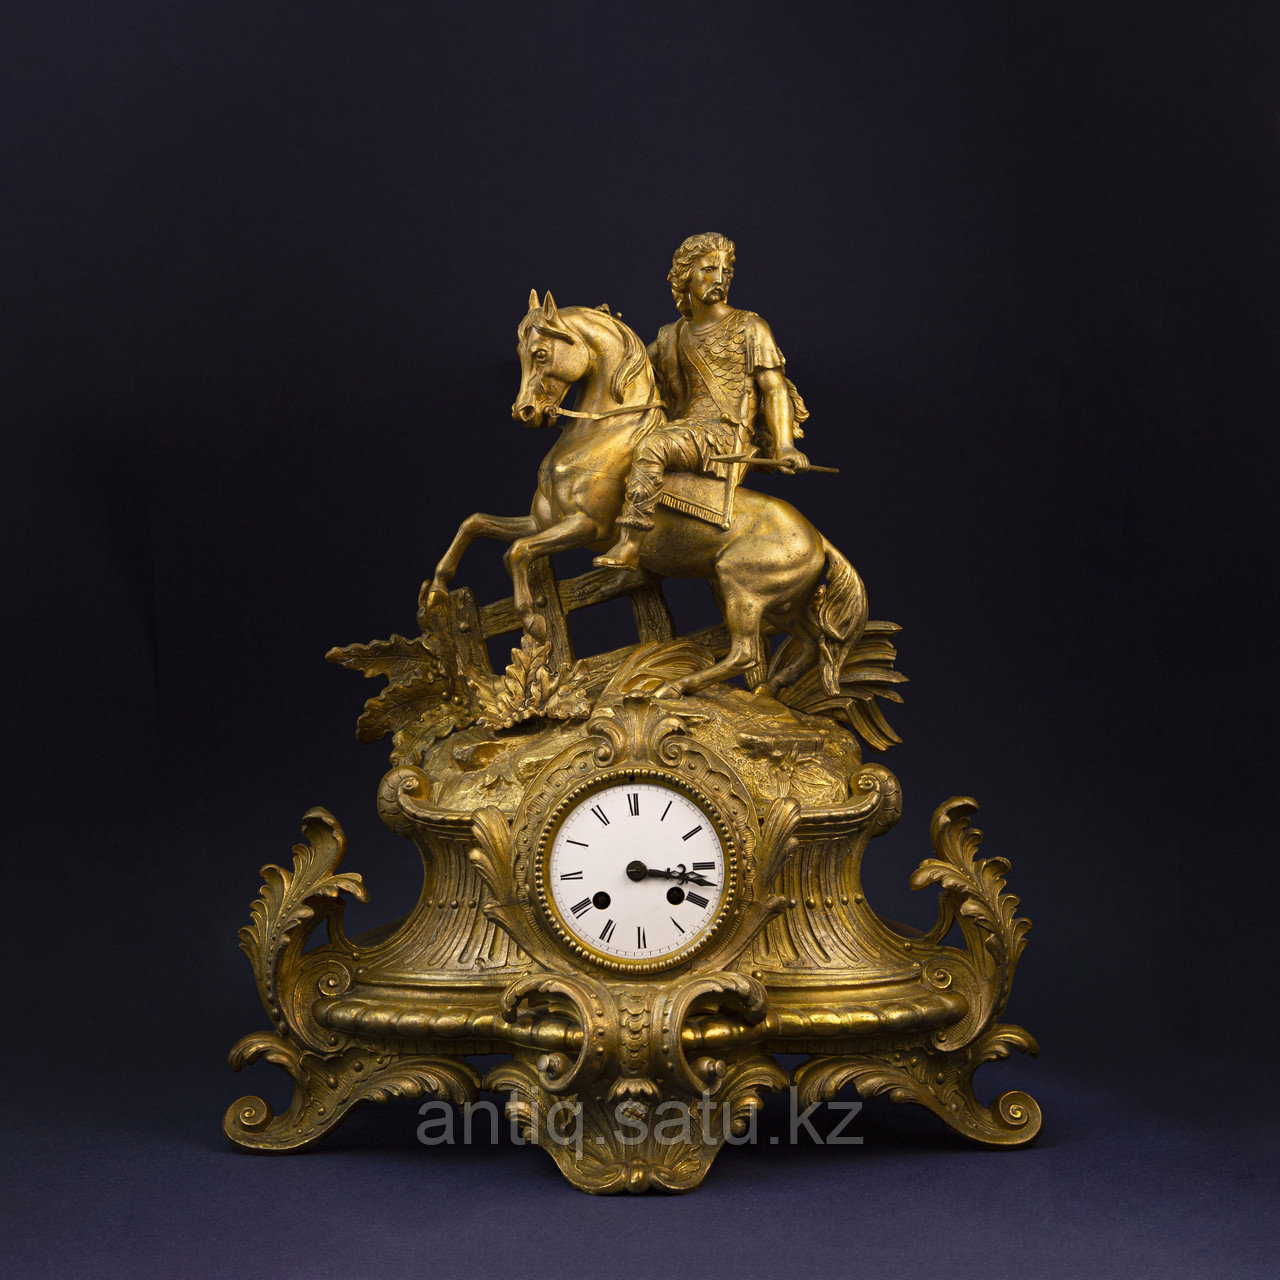 Каминные часы с рыцарем.  Скульптор —​ Phillip Mourey (1840-1910)  Часовая мастерская S. Marti & Cie  Франция.